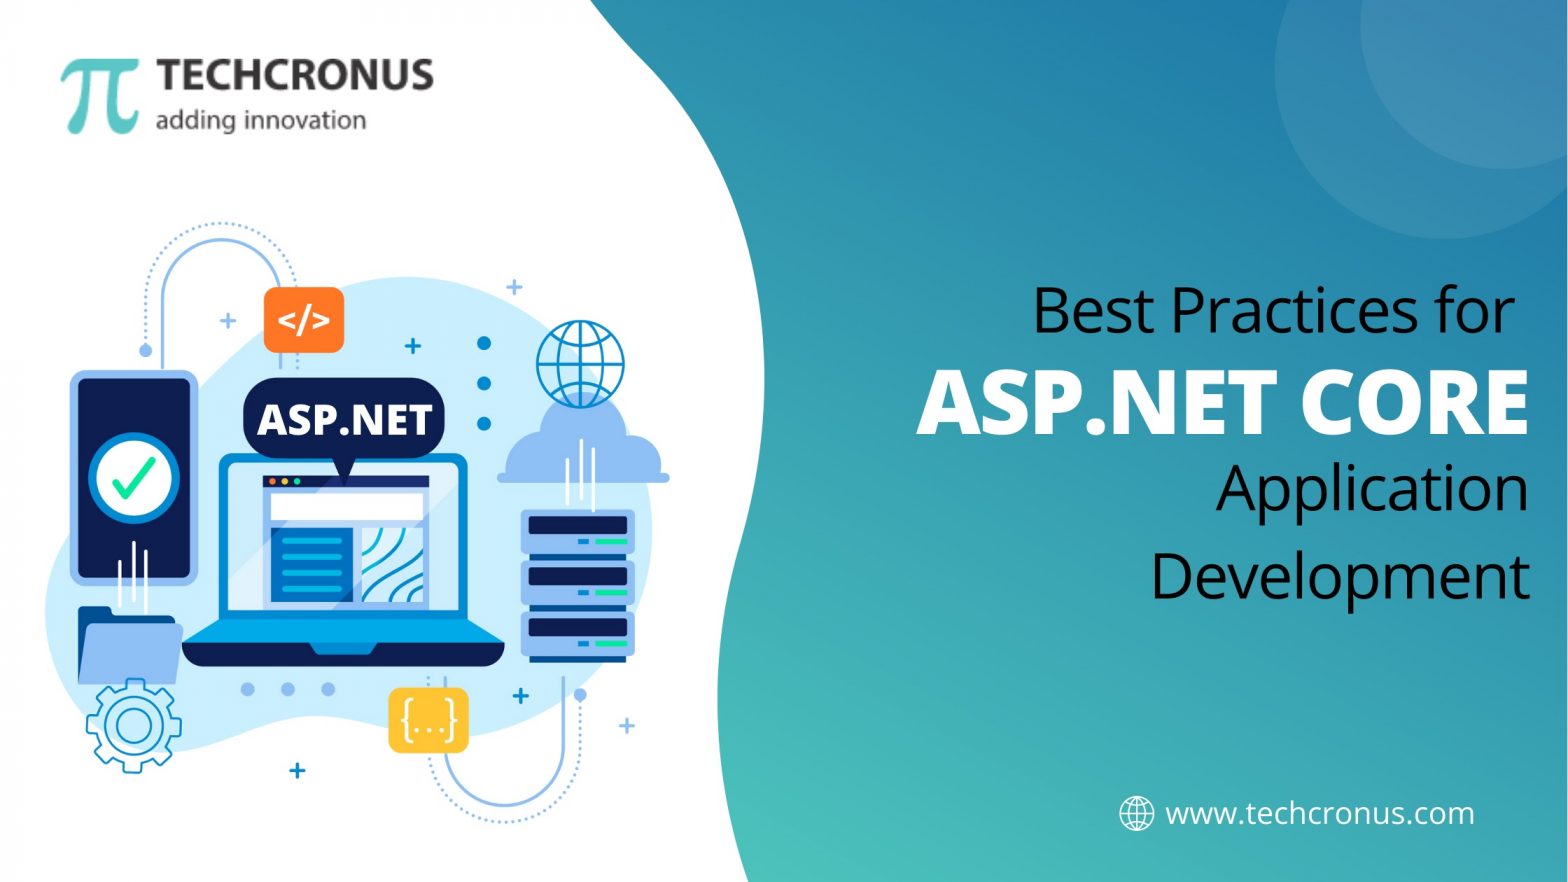 Best Practices for Asp.Net Core Application Development